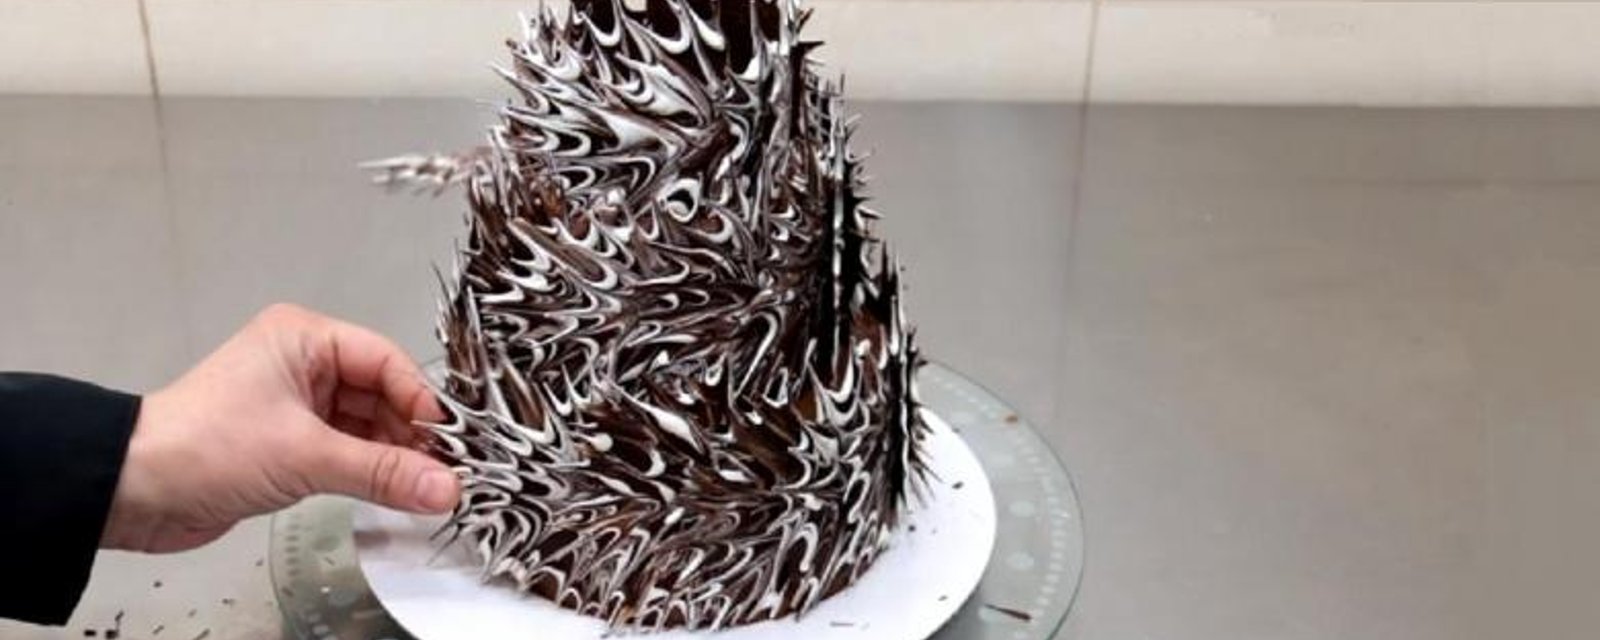 Son incroyable et surprenante façon de décorer ce gâteau vous étonnera, tellement c'est facile! 